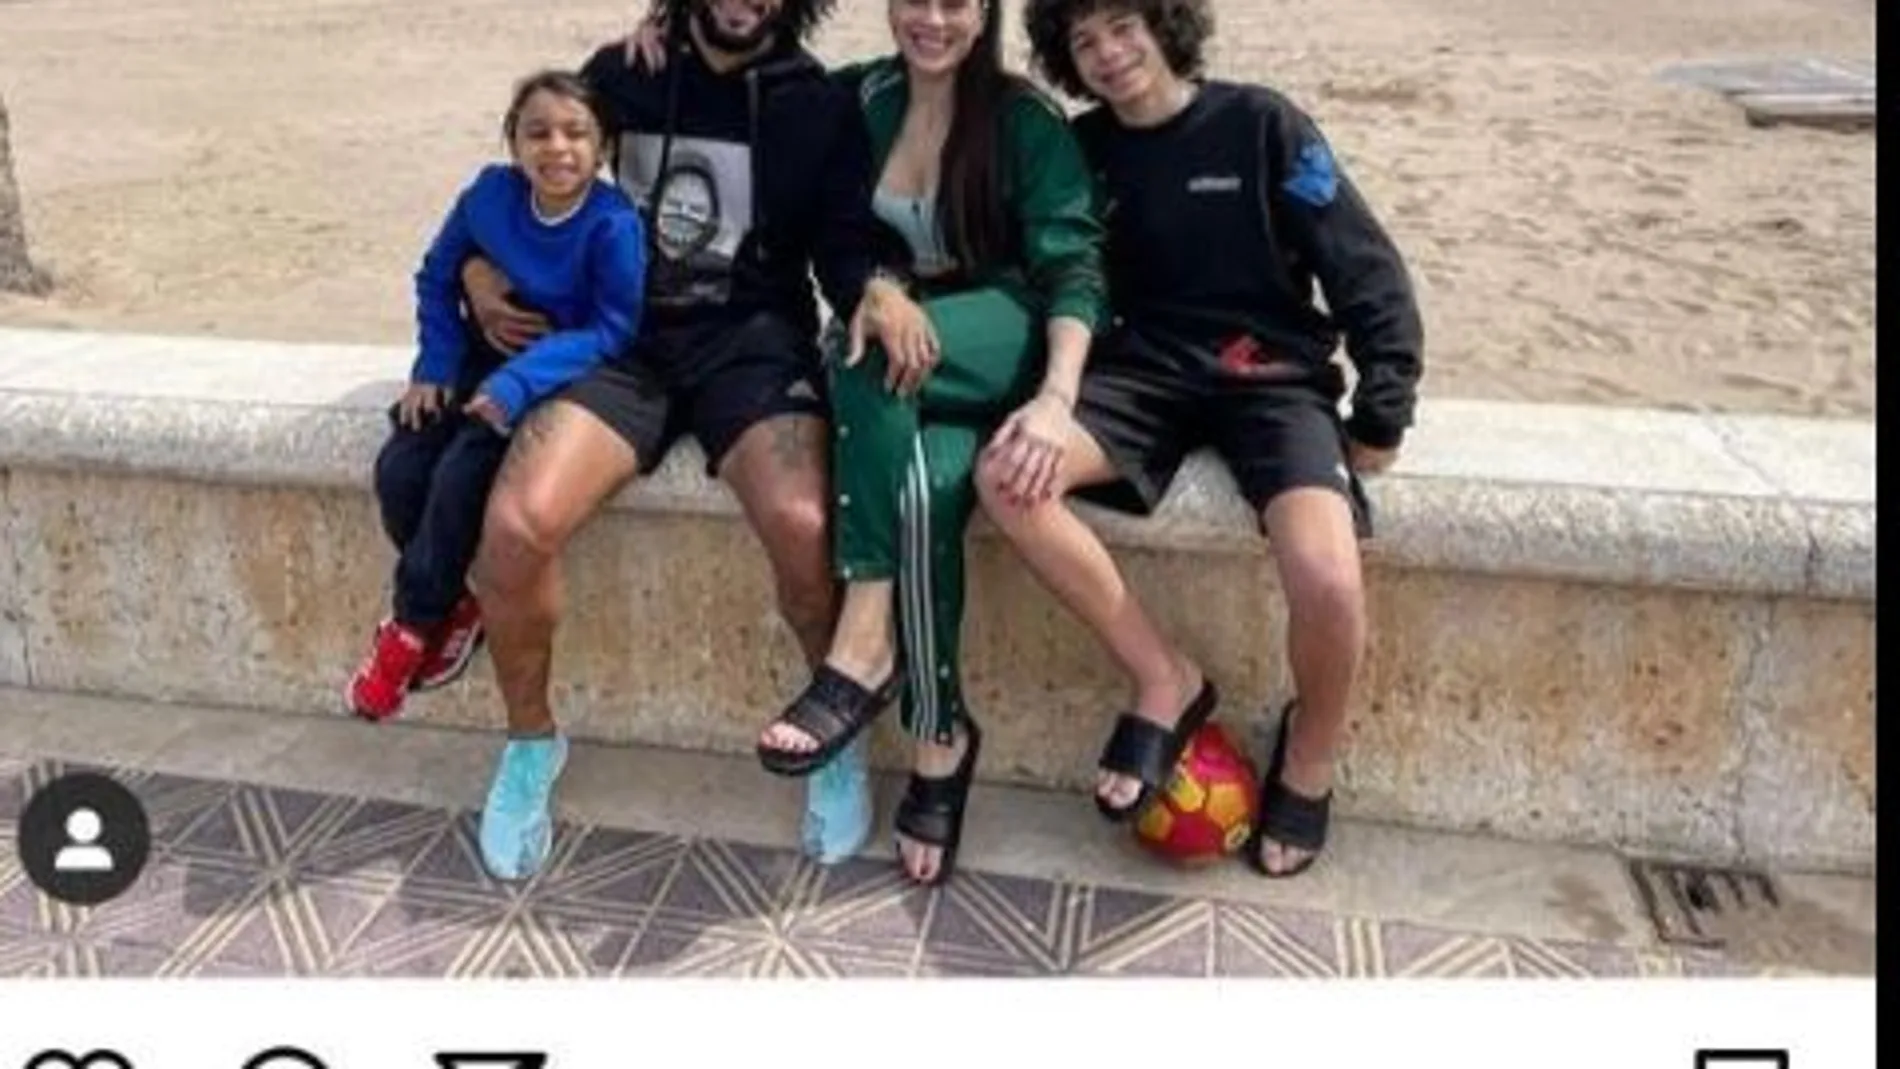 Marcelo, jugador del Real Madrid, ha publicado esta foto en Instagram